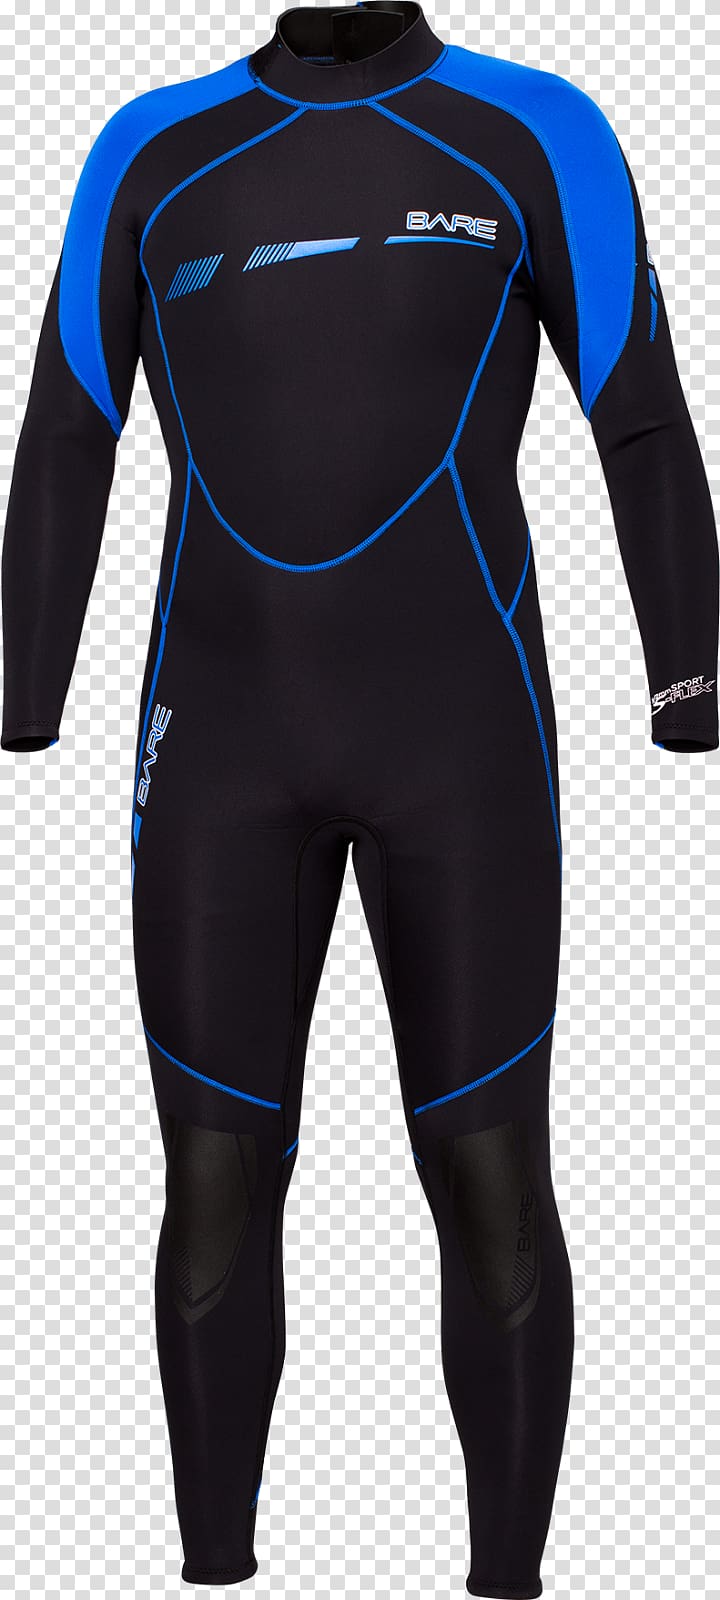 Wetsuit Diving suit Underwater diving Scuba diving Dry suit, suit transparent background PNG clipart